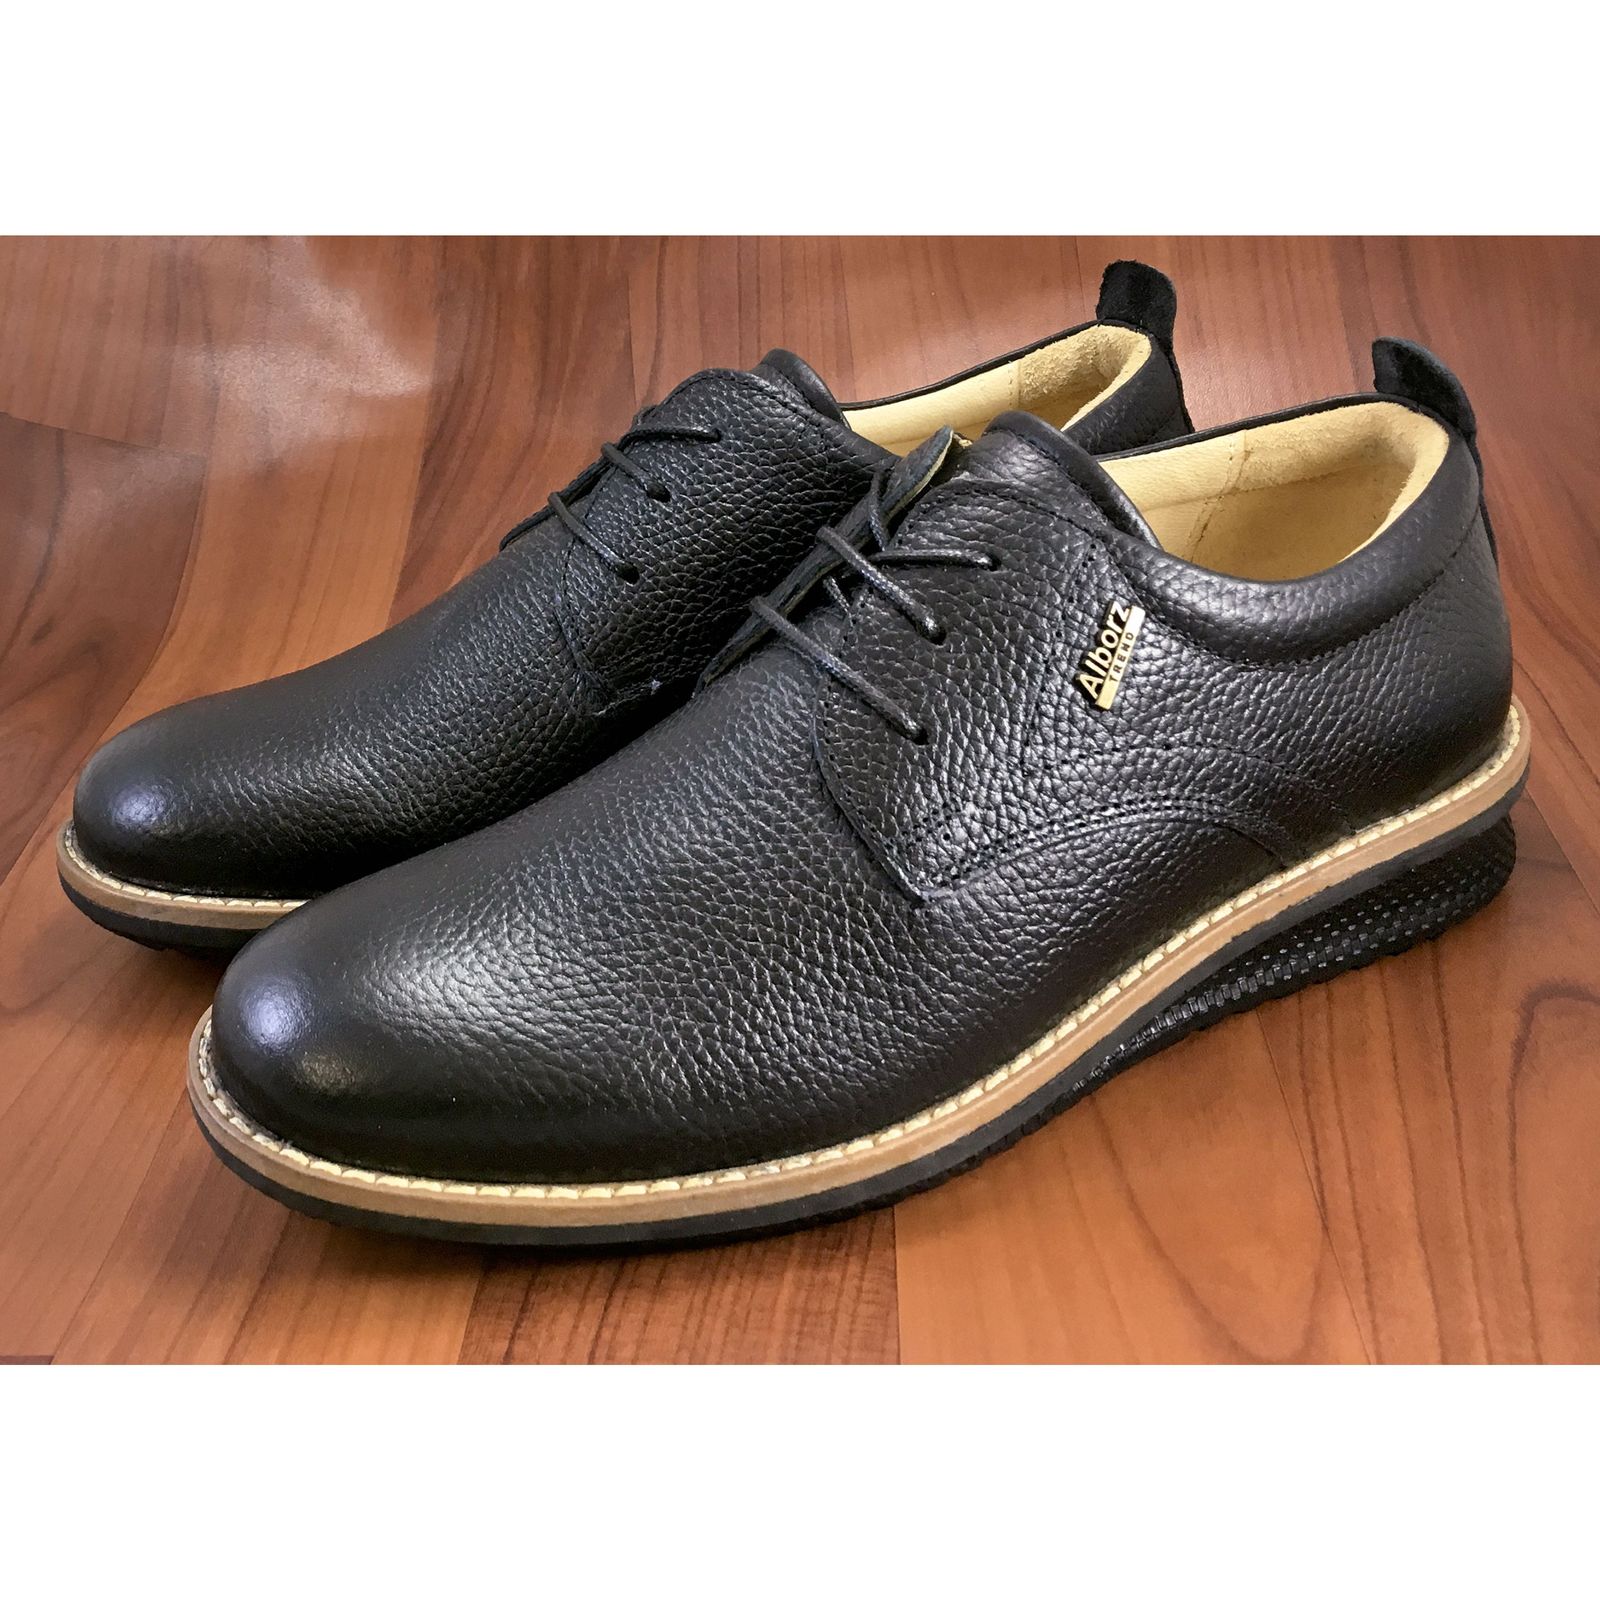 کفش روزمره مردانه شرکت کفش البرز مدل HMN کد 2924-3 -  - 12